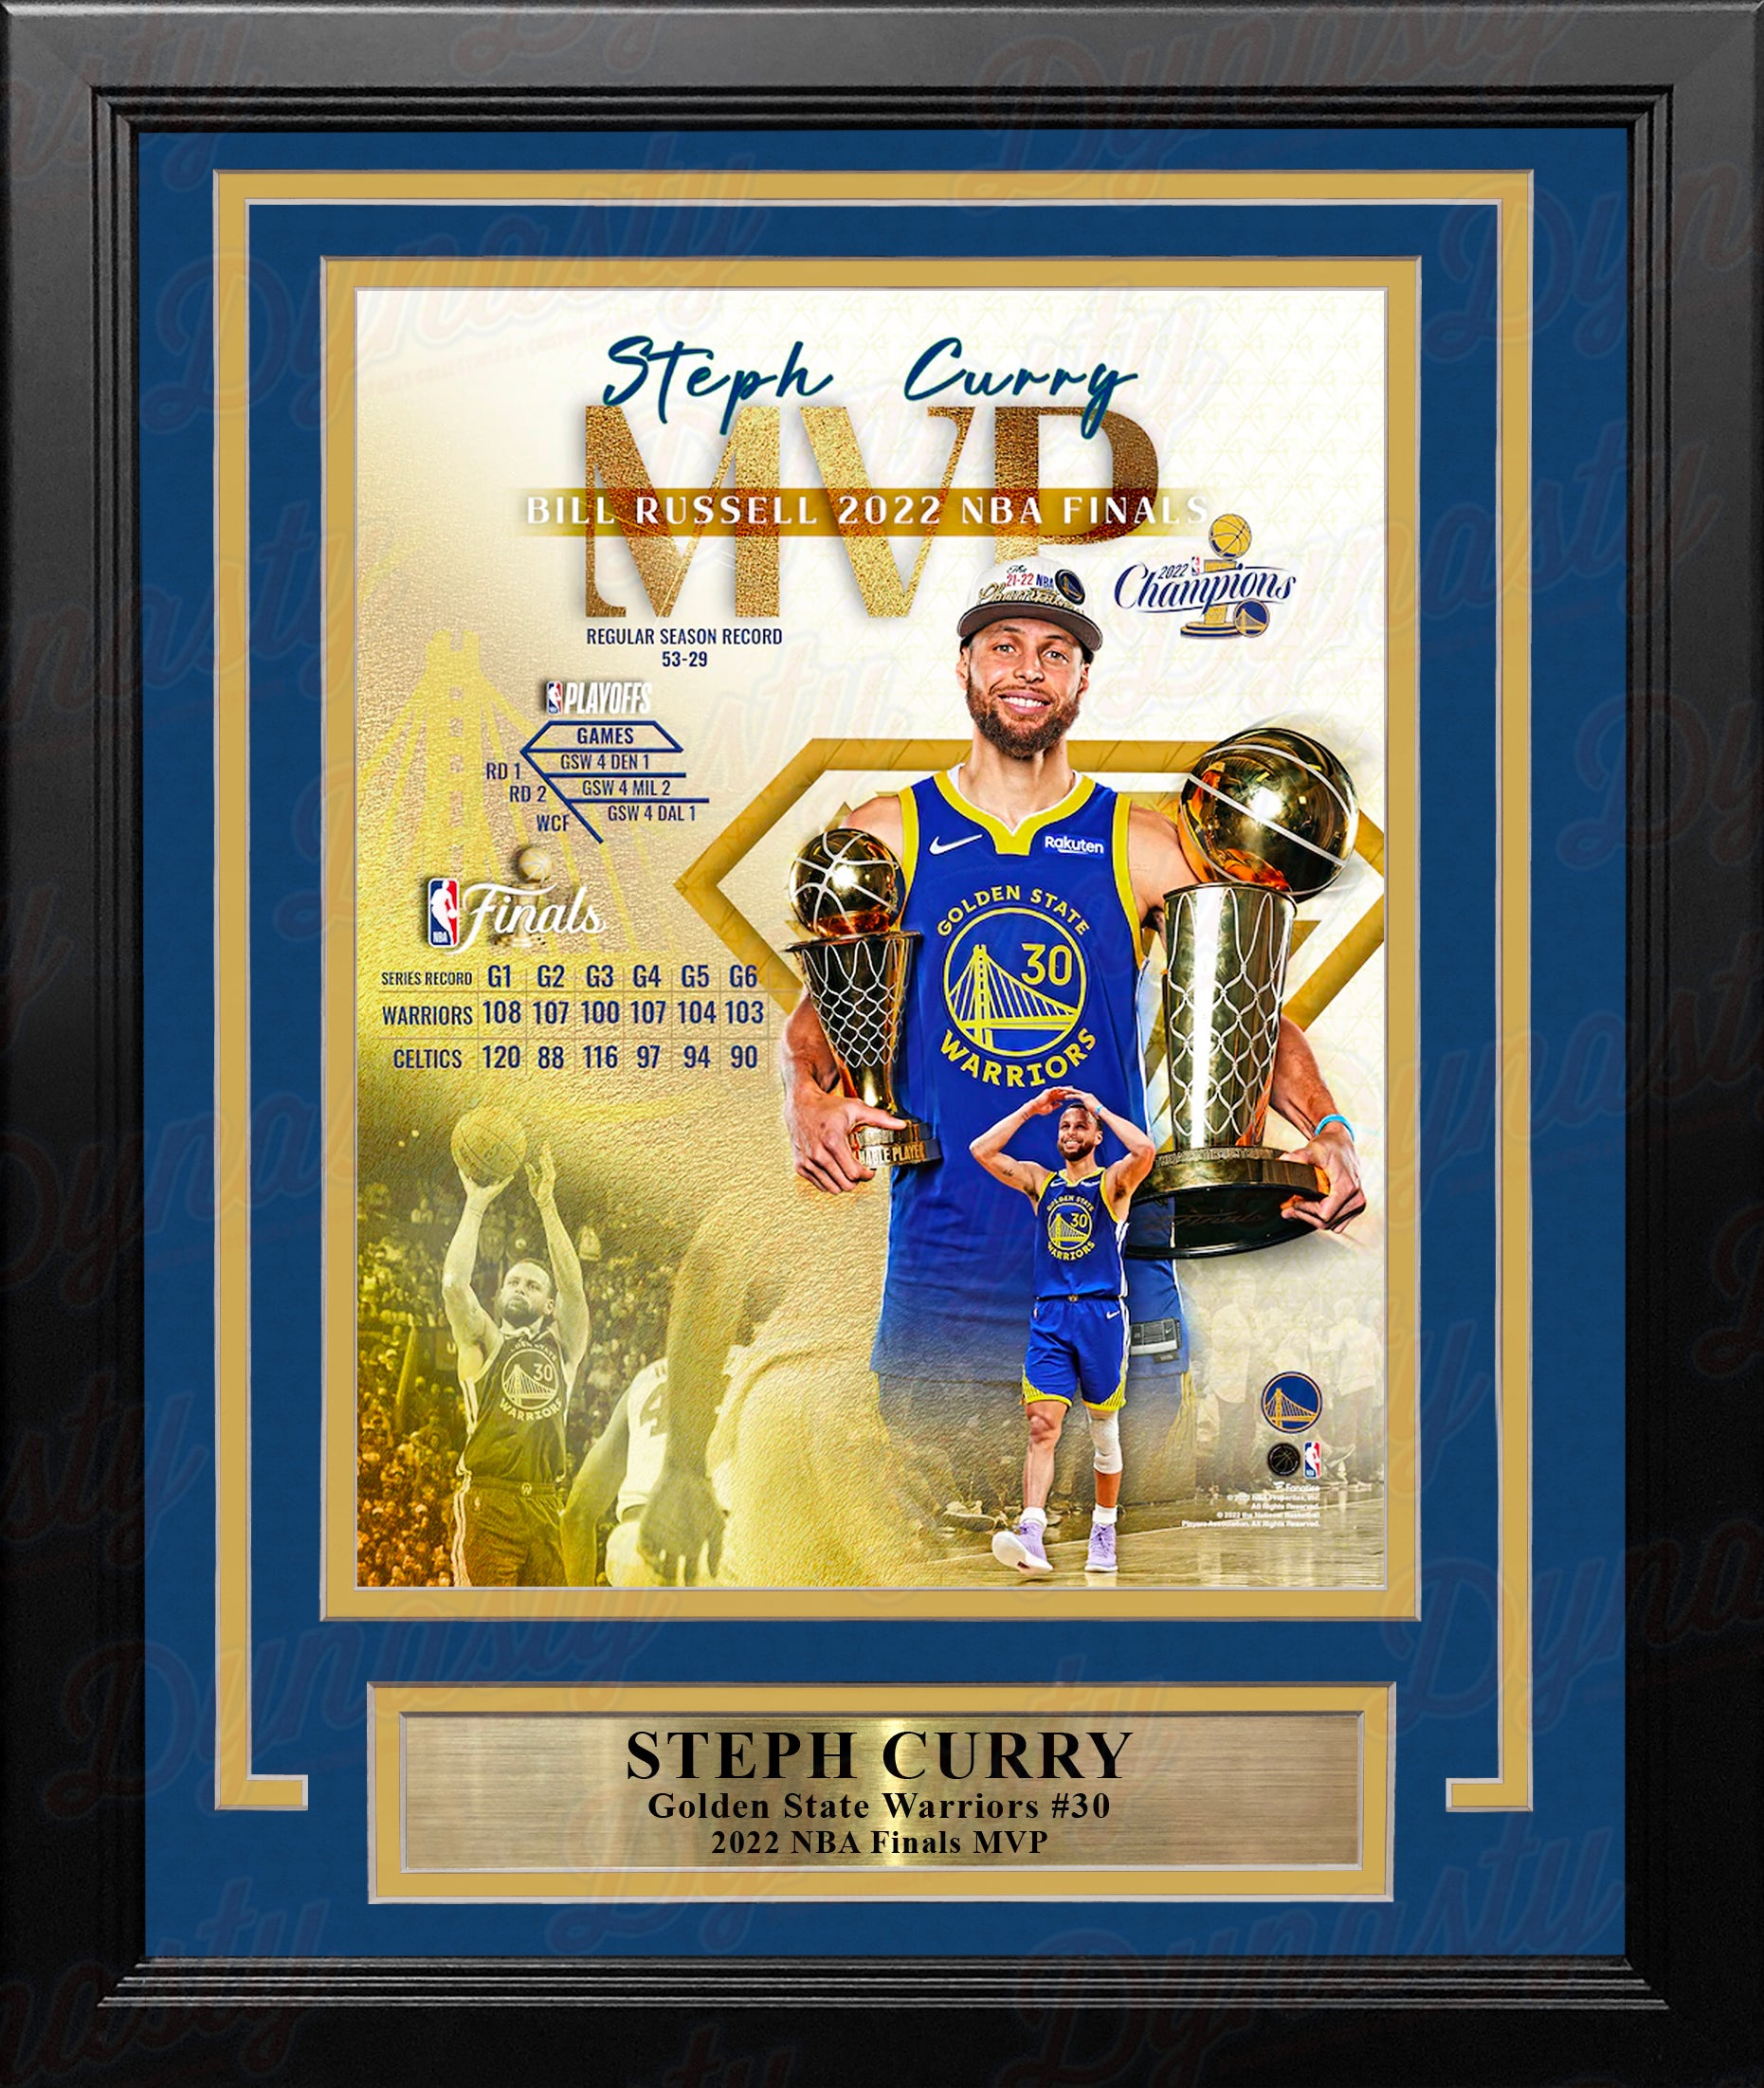 Steph Curry's NBA Finals MVP Mixtape 